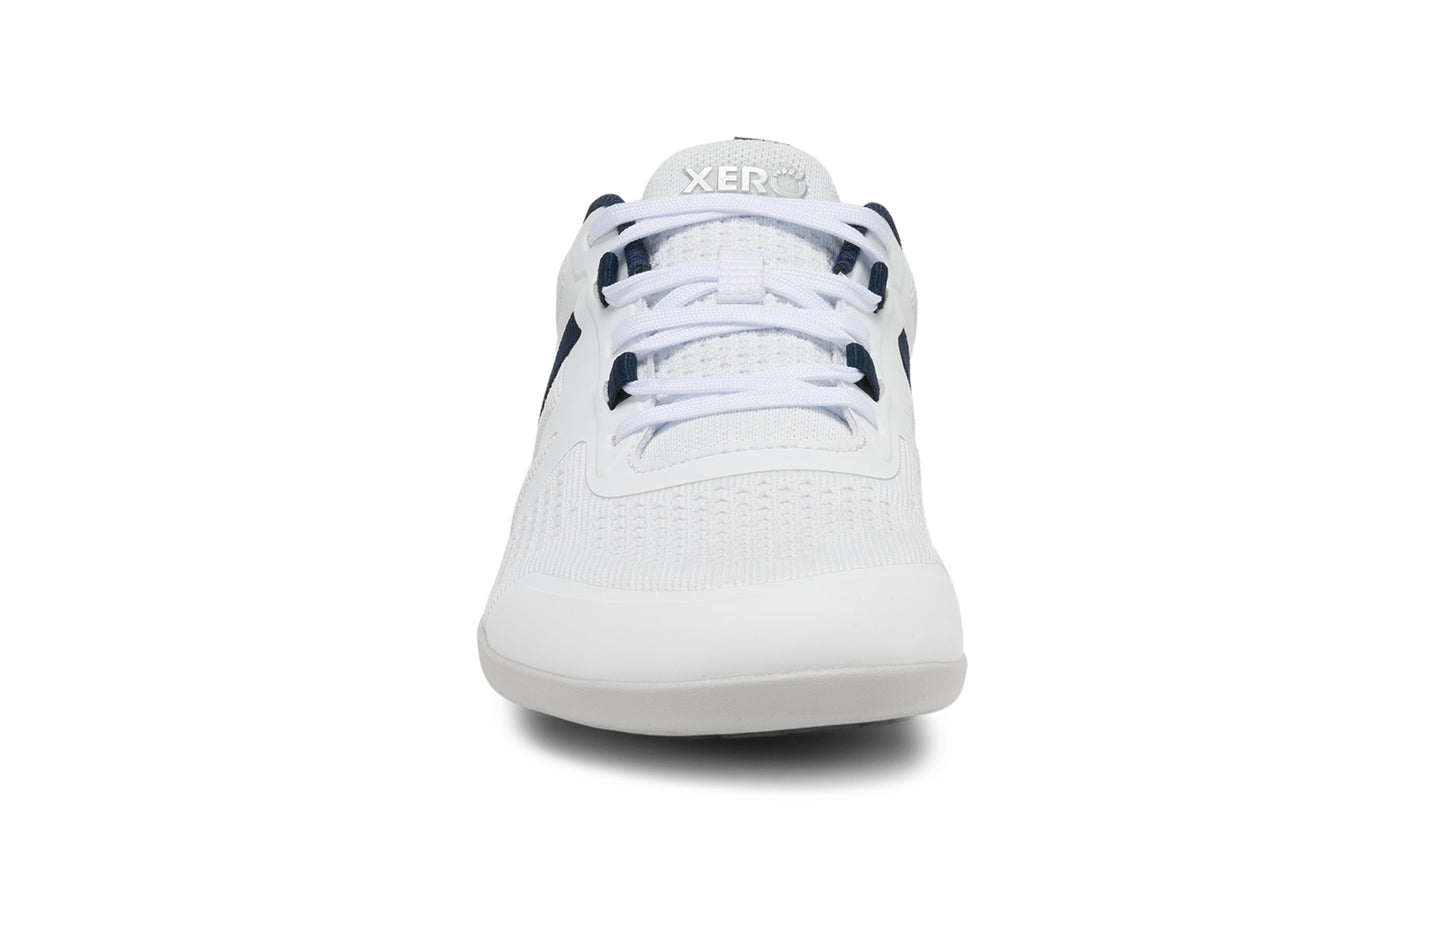 Xero Shoes - Prio Neo - White - Men's